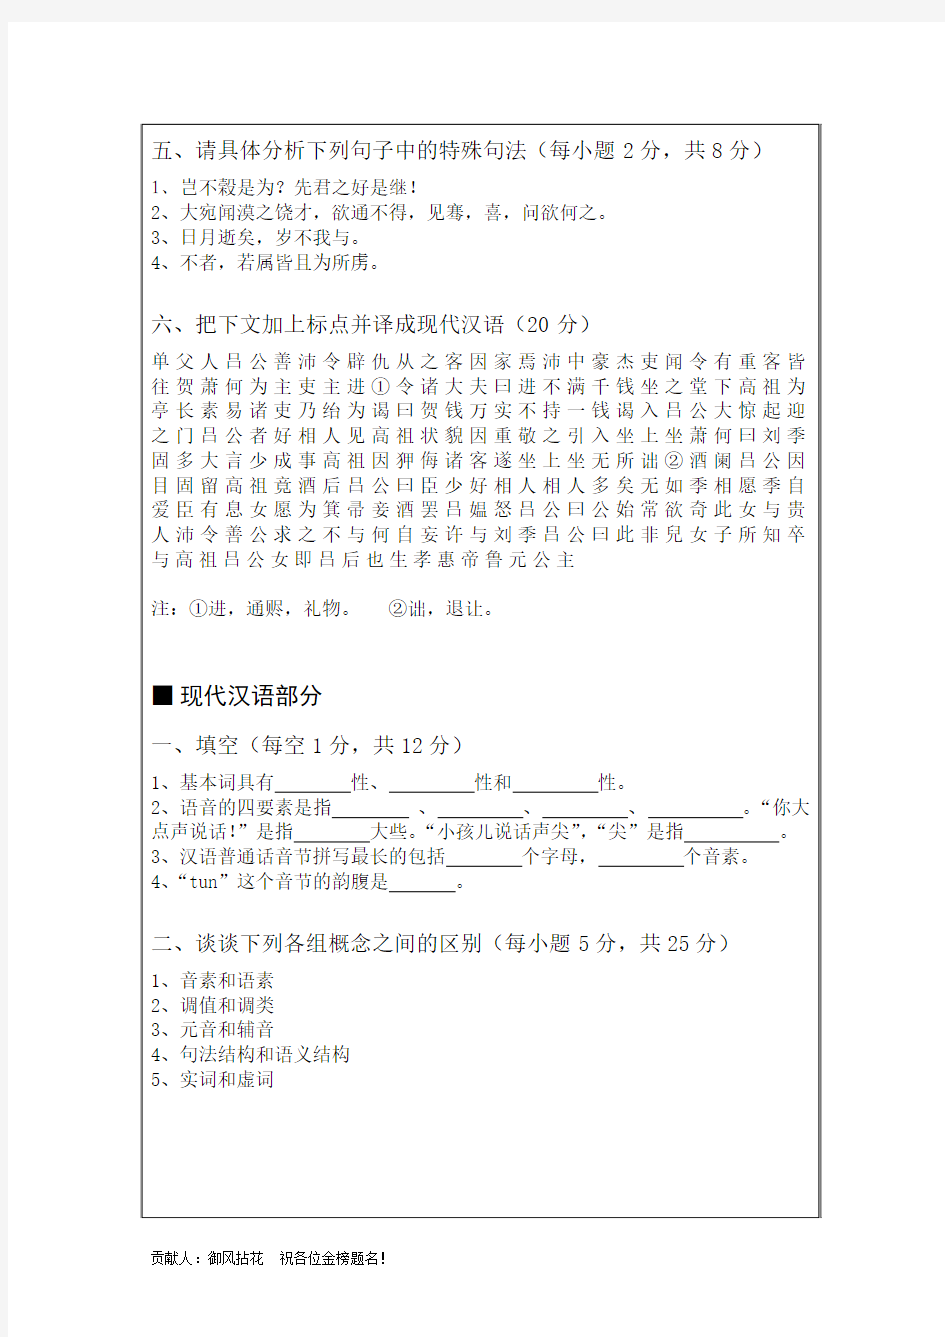 武汉大学文学院 2011年考研汉语言文字学、语言学、对外汉语 真题(科目：汉语基础)